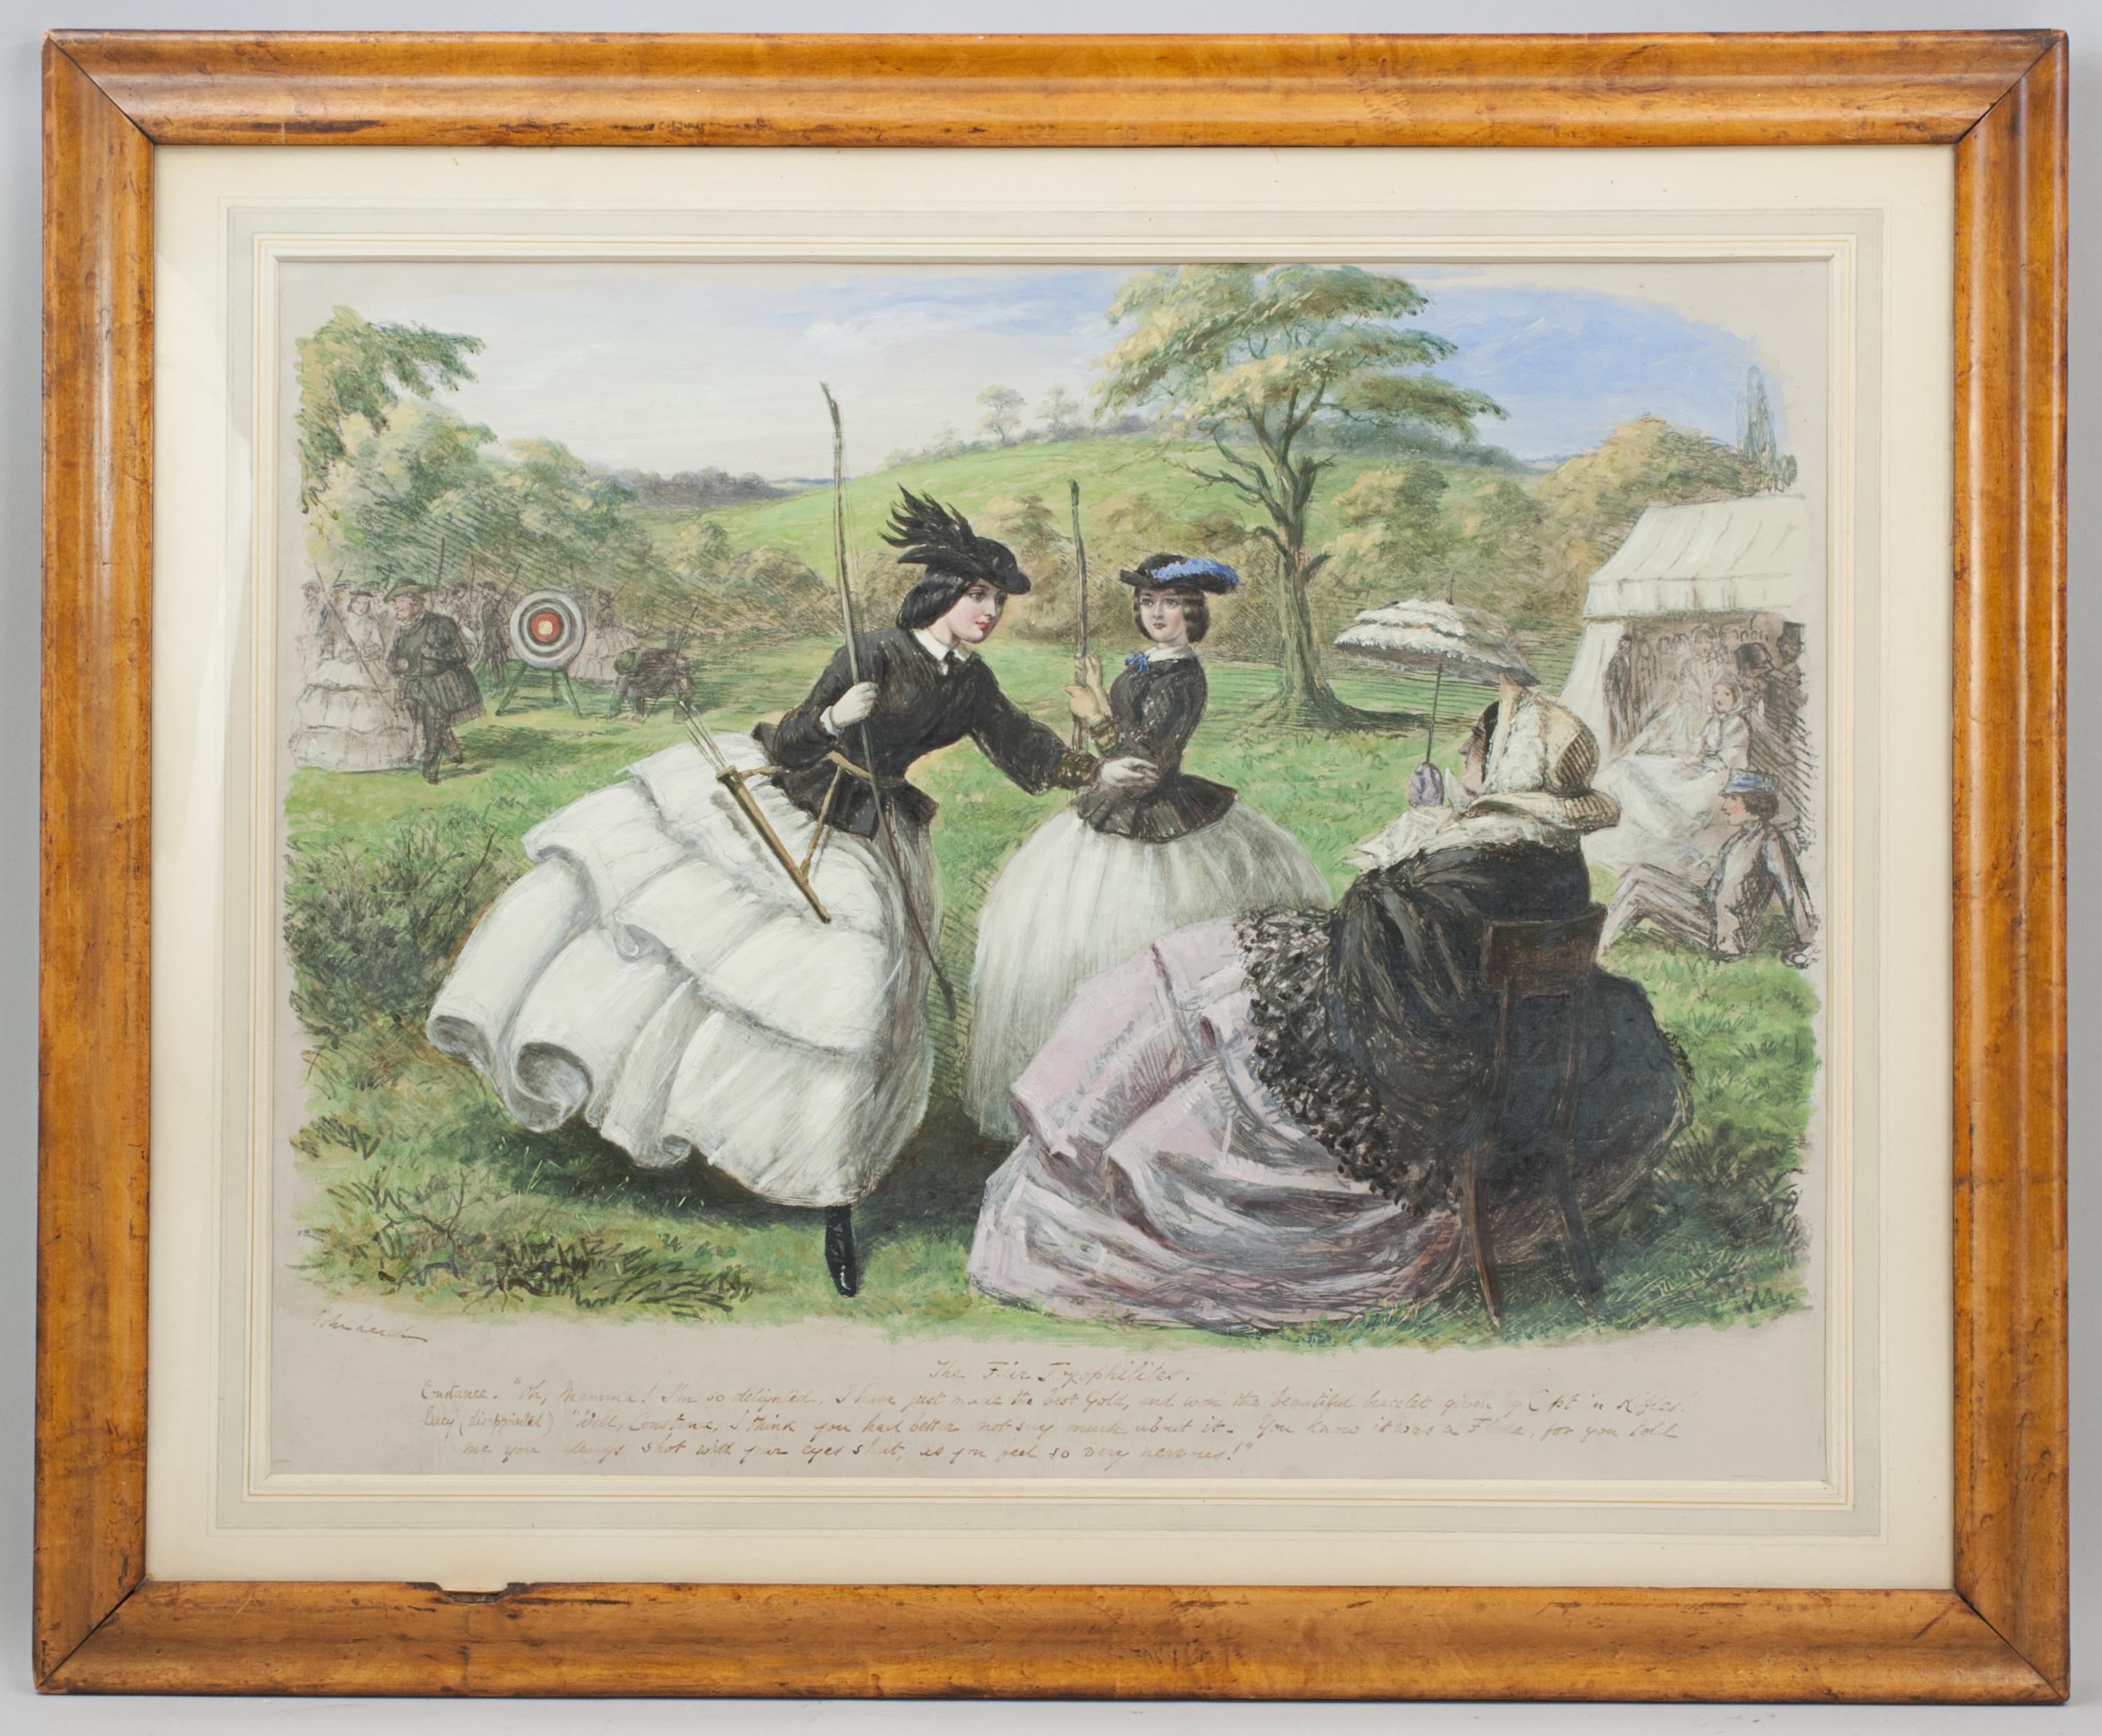 Peinture à l'huile originale de John Leech Archery, The Fair Toxopholites.
Une belle huile originale de John Leech intitulée 